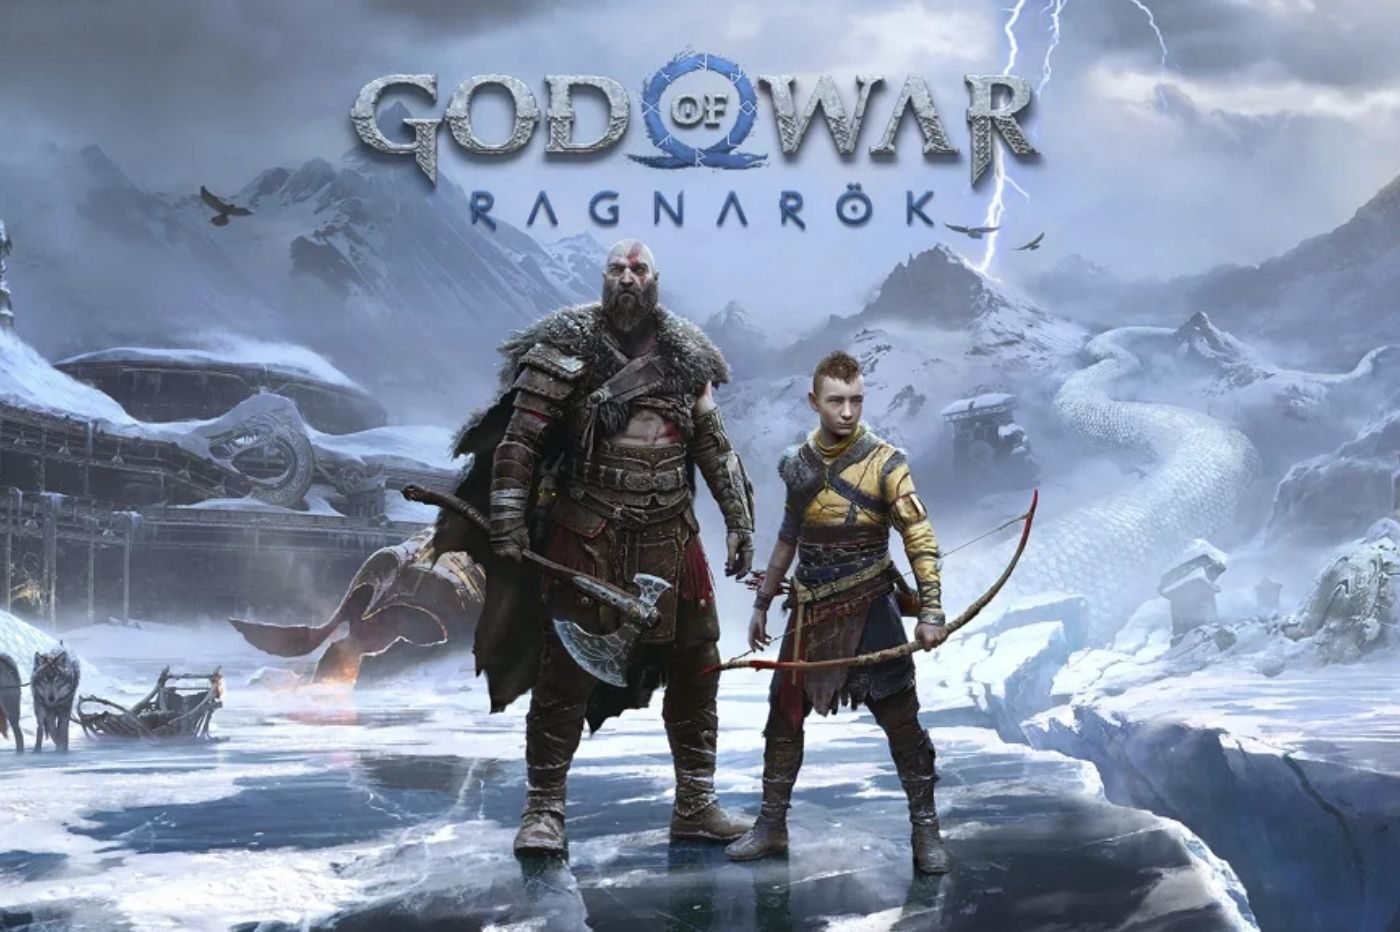 Image promotionnelle de God of War Ragnarök avec Kratos, Atreus et le logo du jeu.